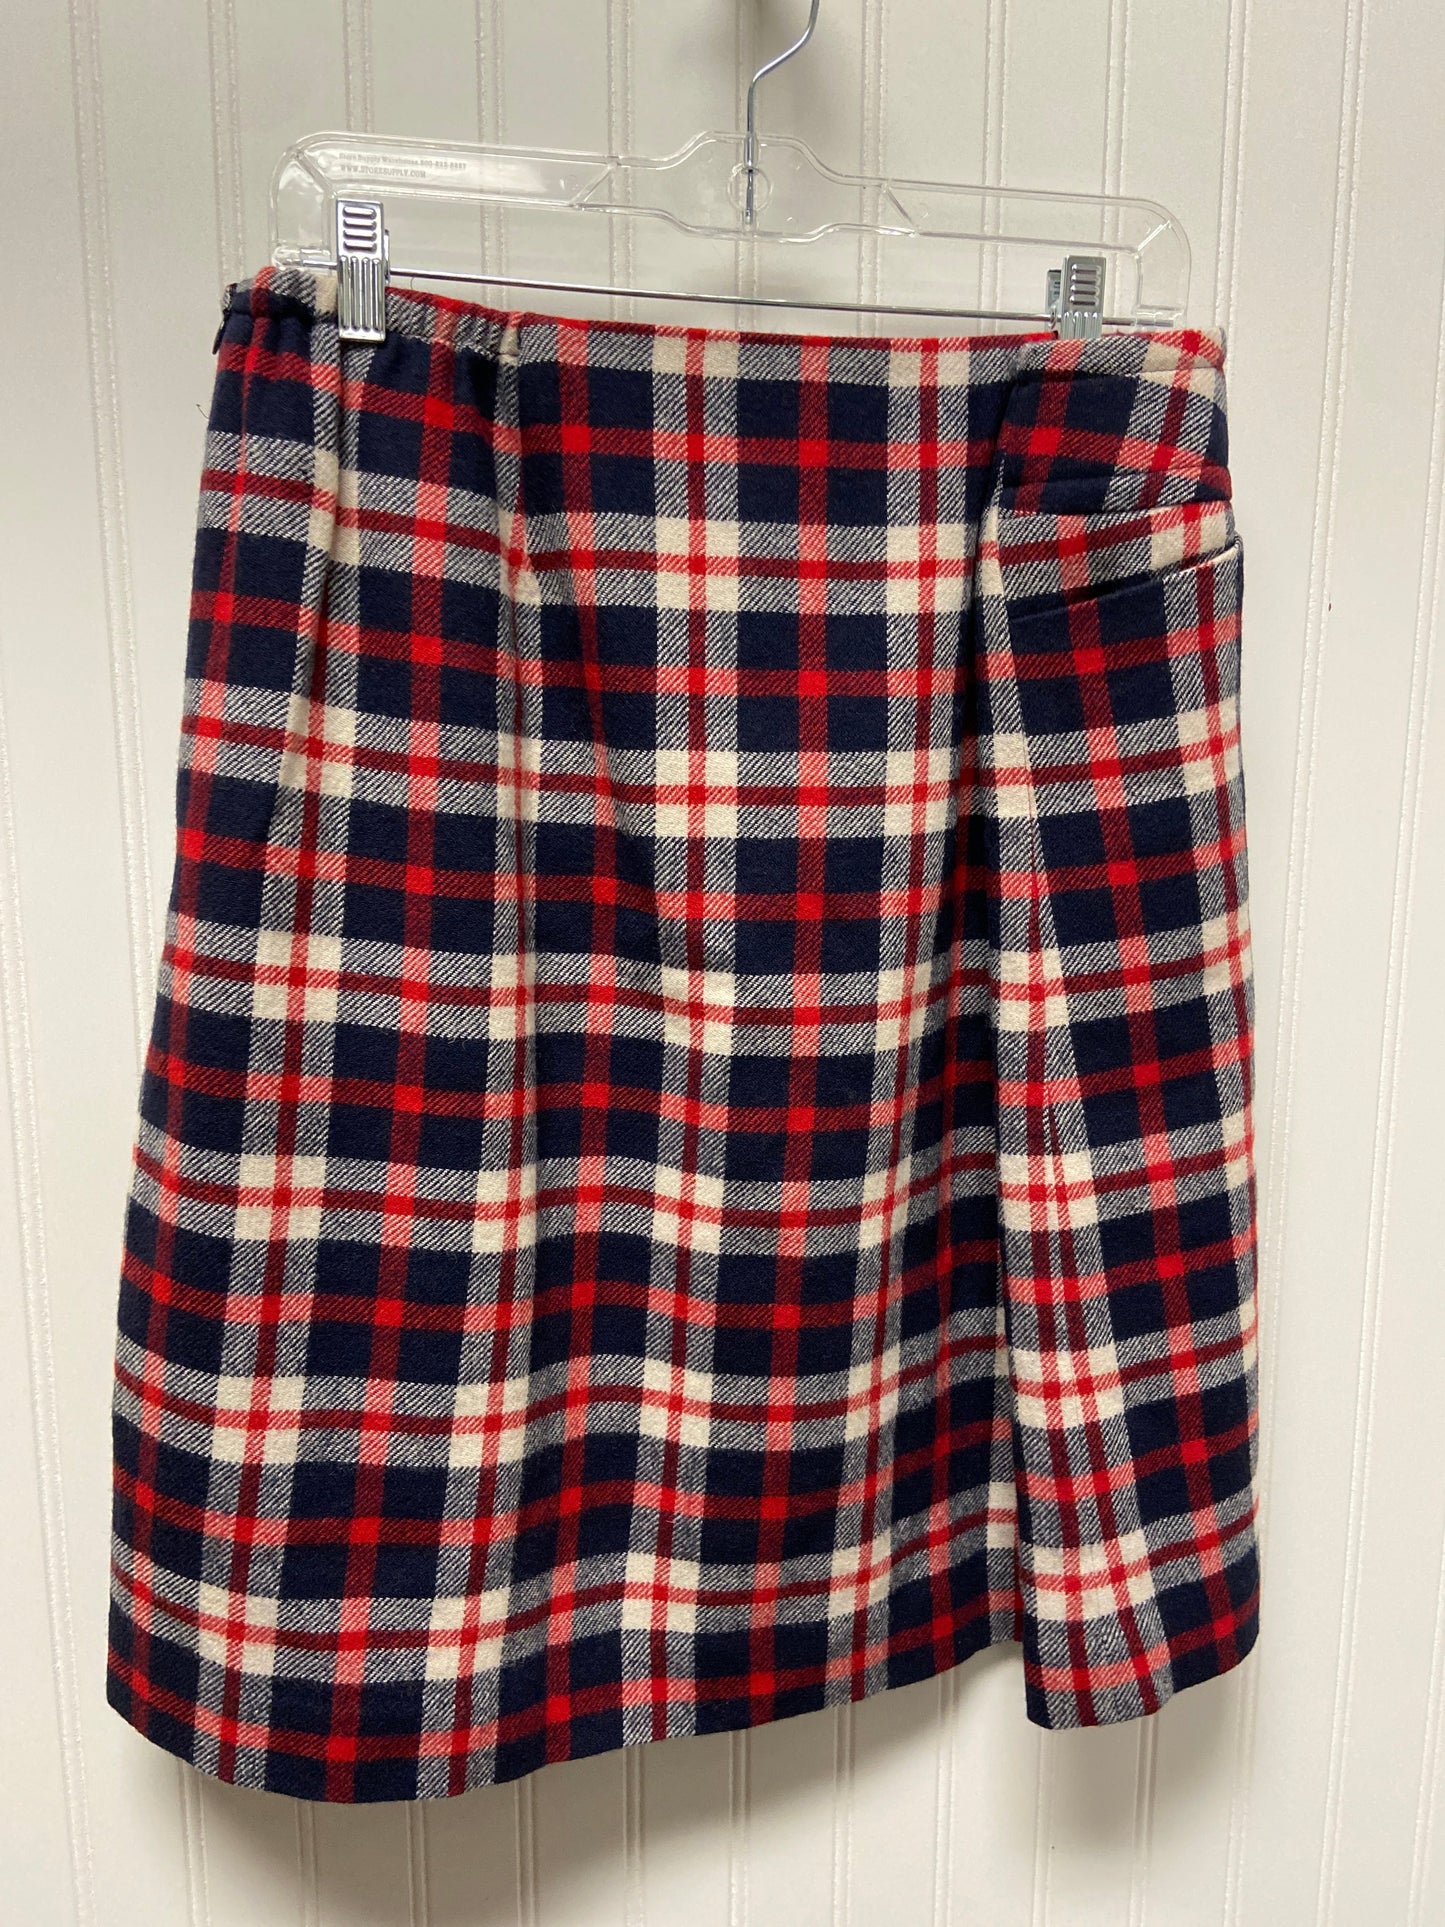 Plaid Pattern Skirt Midi Talbots, Size 16w